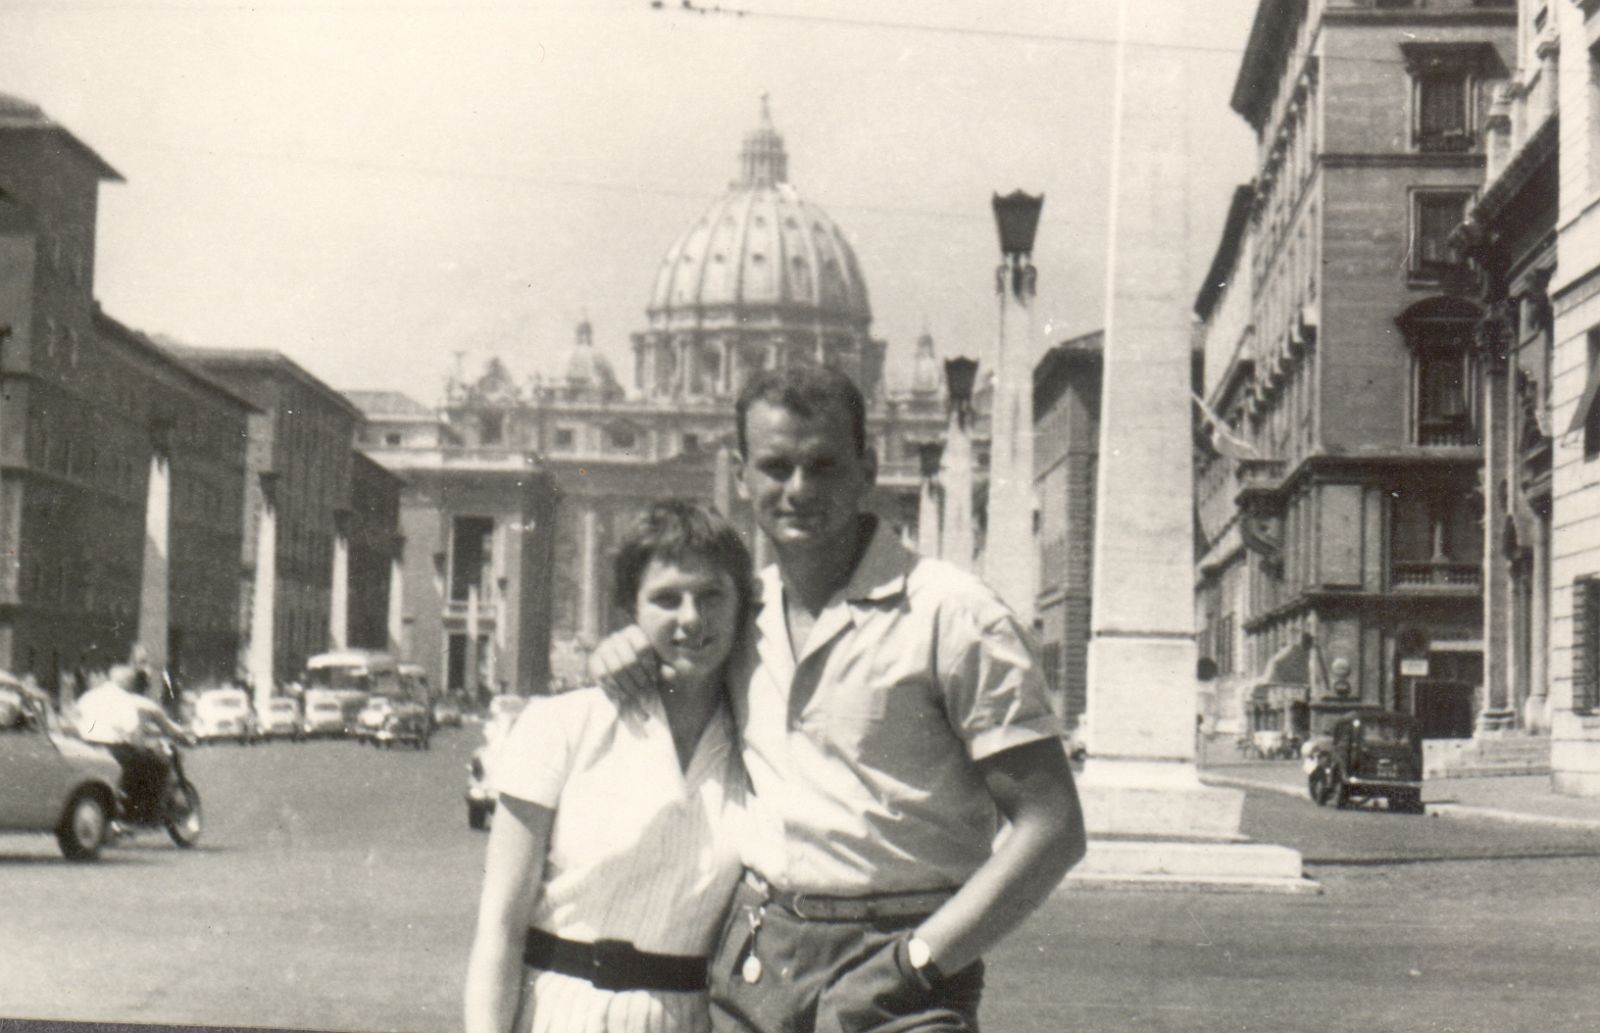 Orbán Olga 1959-ben kötött házasságot Szabó Sándor kolozsvári vízilabdázóval, akivel a Melbourne-i olimpián ismerkedett meg. Ez a felvétel kettőjükről a Szent Péter-bazilika kupolájával a háttérben az 1960-as római világbajnokság alatt készült.
